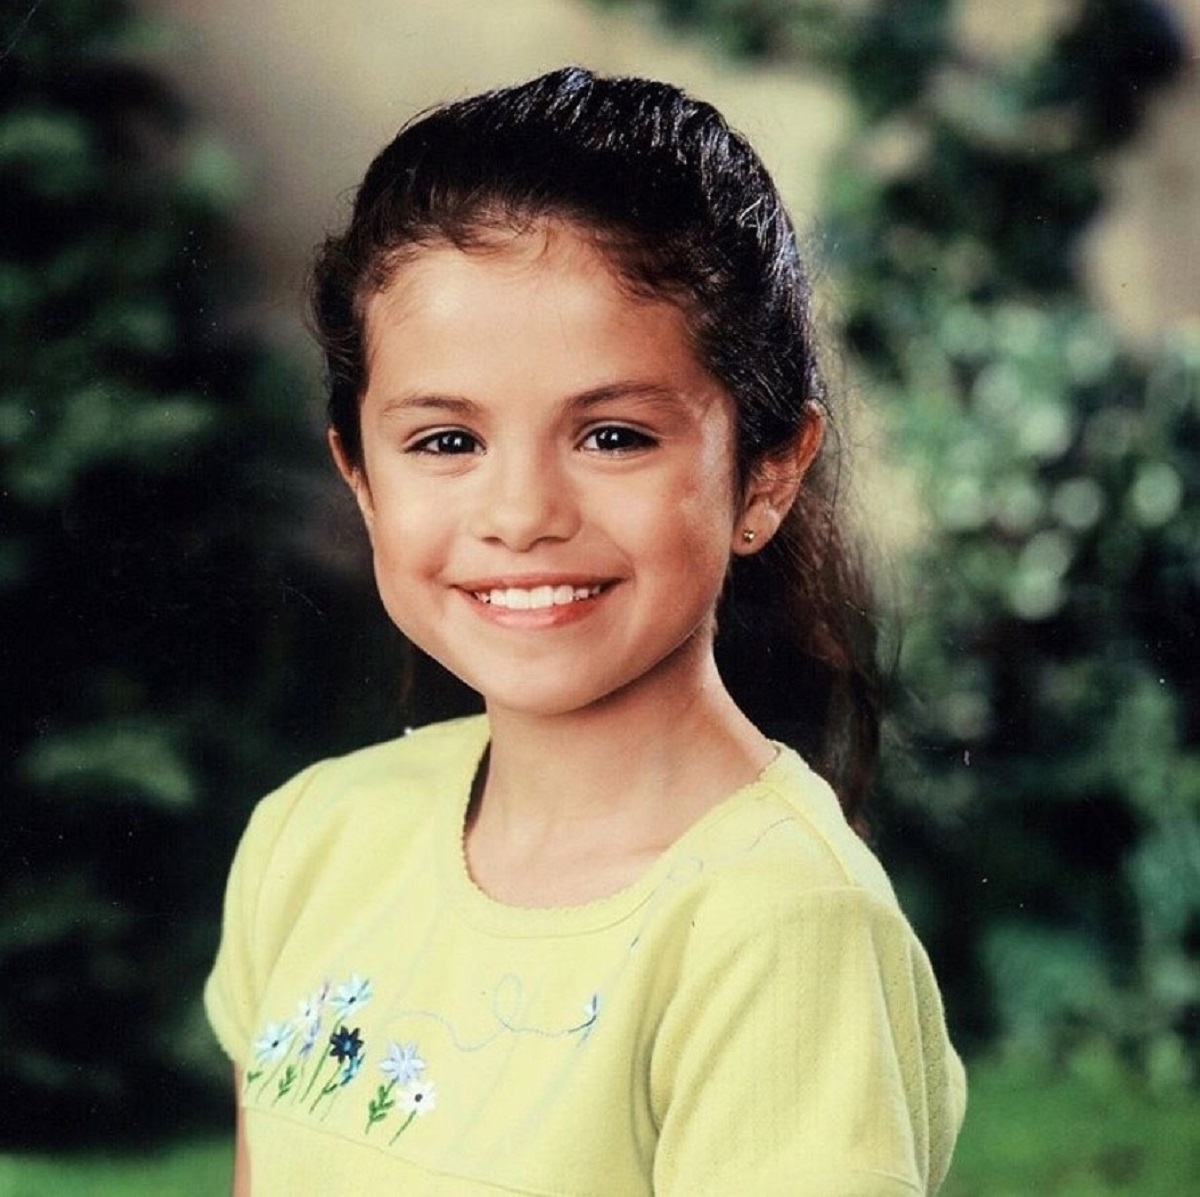 Selena Gomez într-un tricou galben într-o imaginie din copilărie